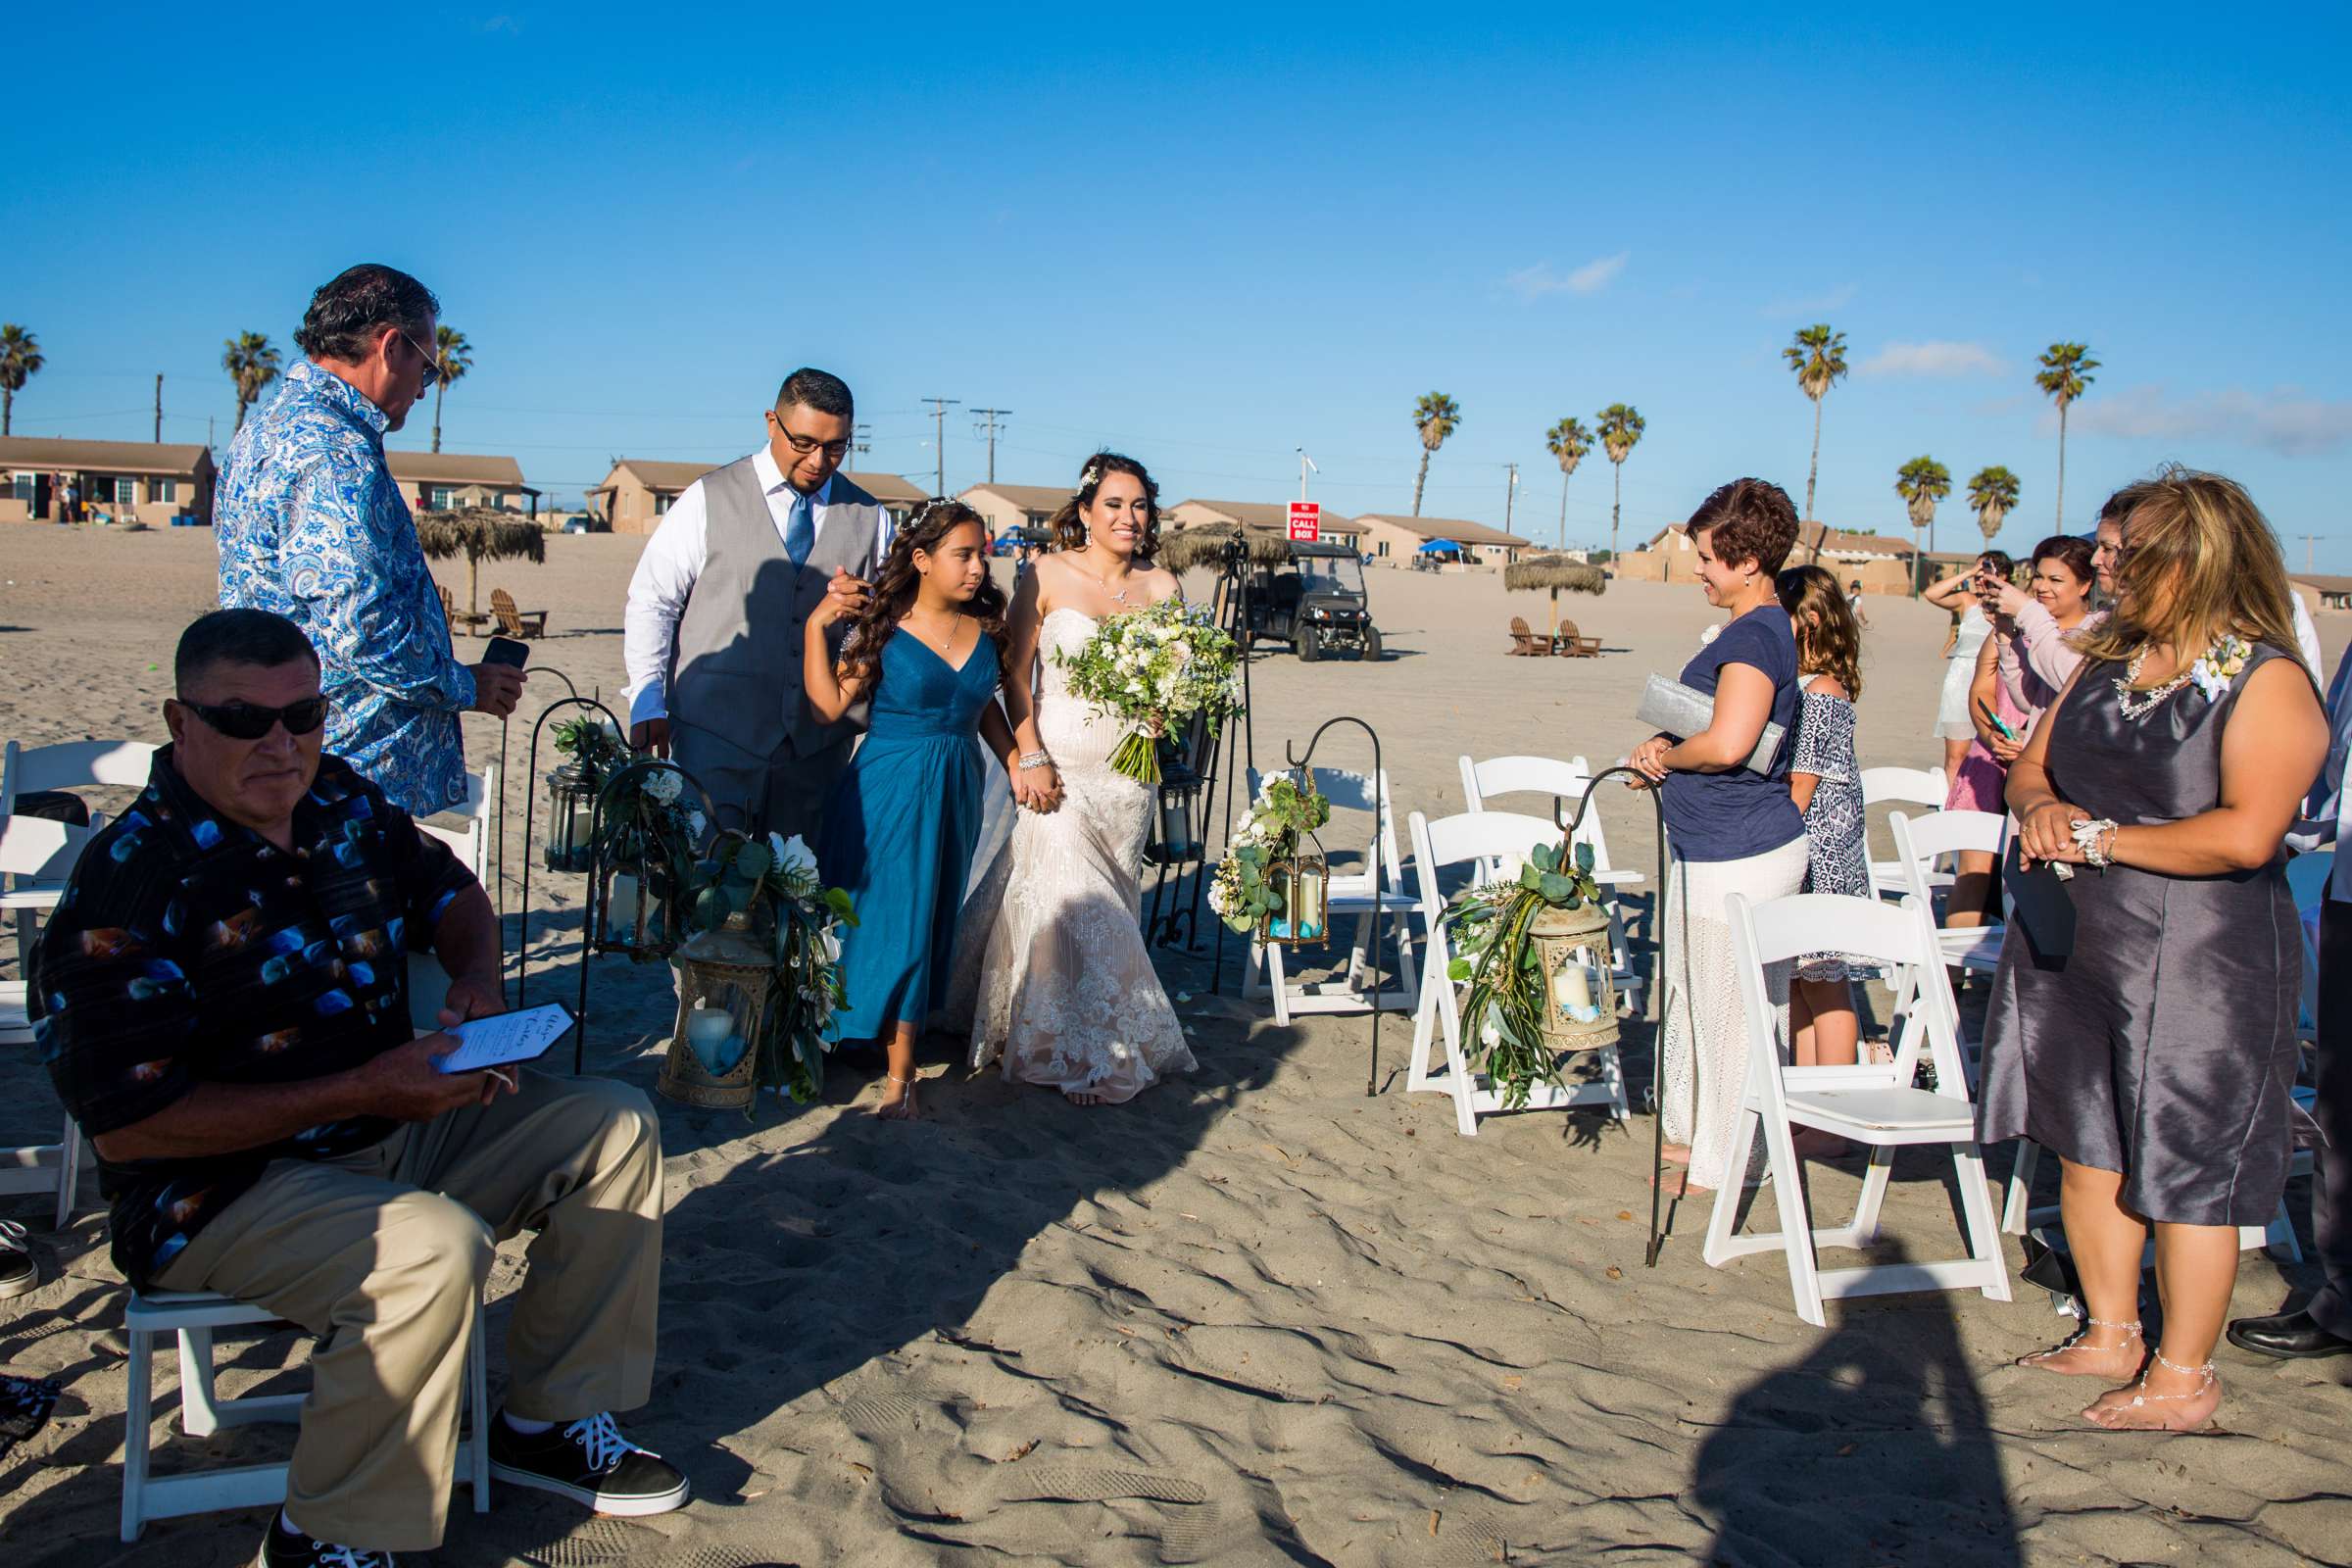 Del Mar Beach Resort Wedding coordinated by La Casa Del Mar, Alisa and Carlos Wedding Photo #380881 by True Photography